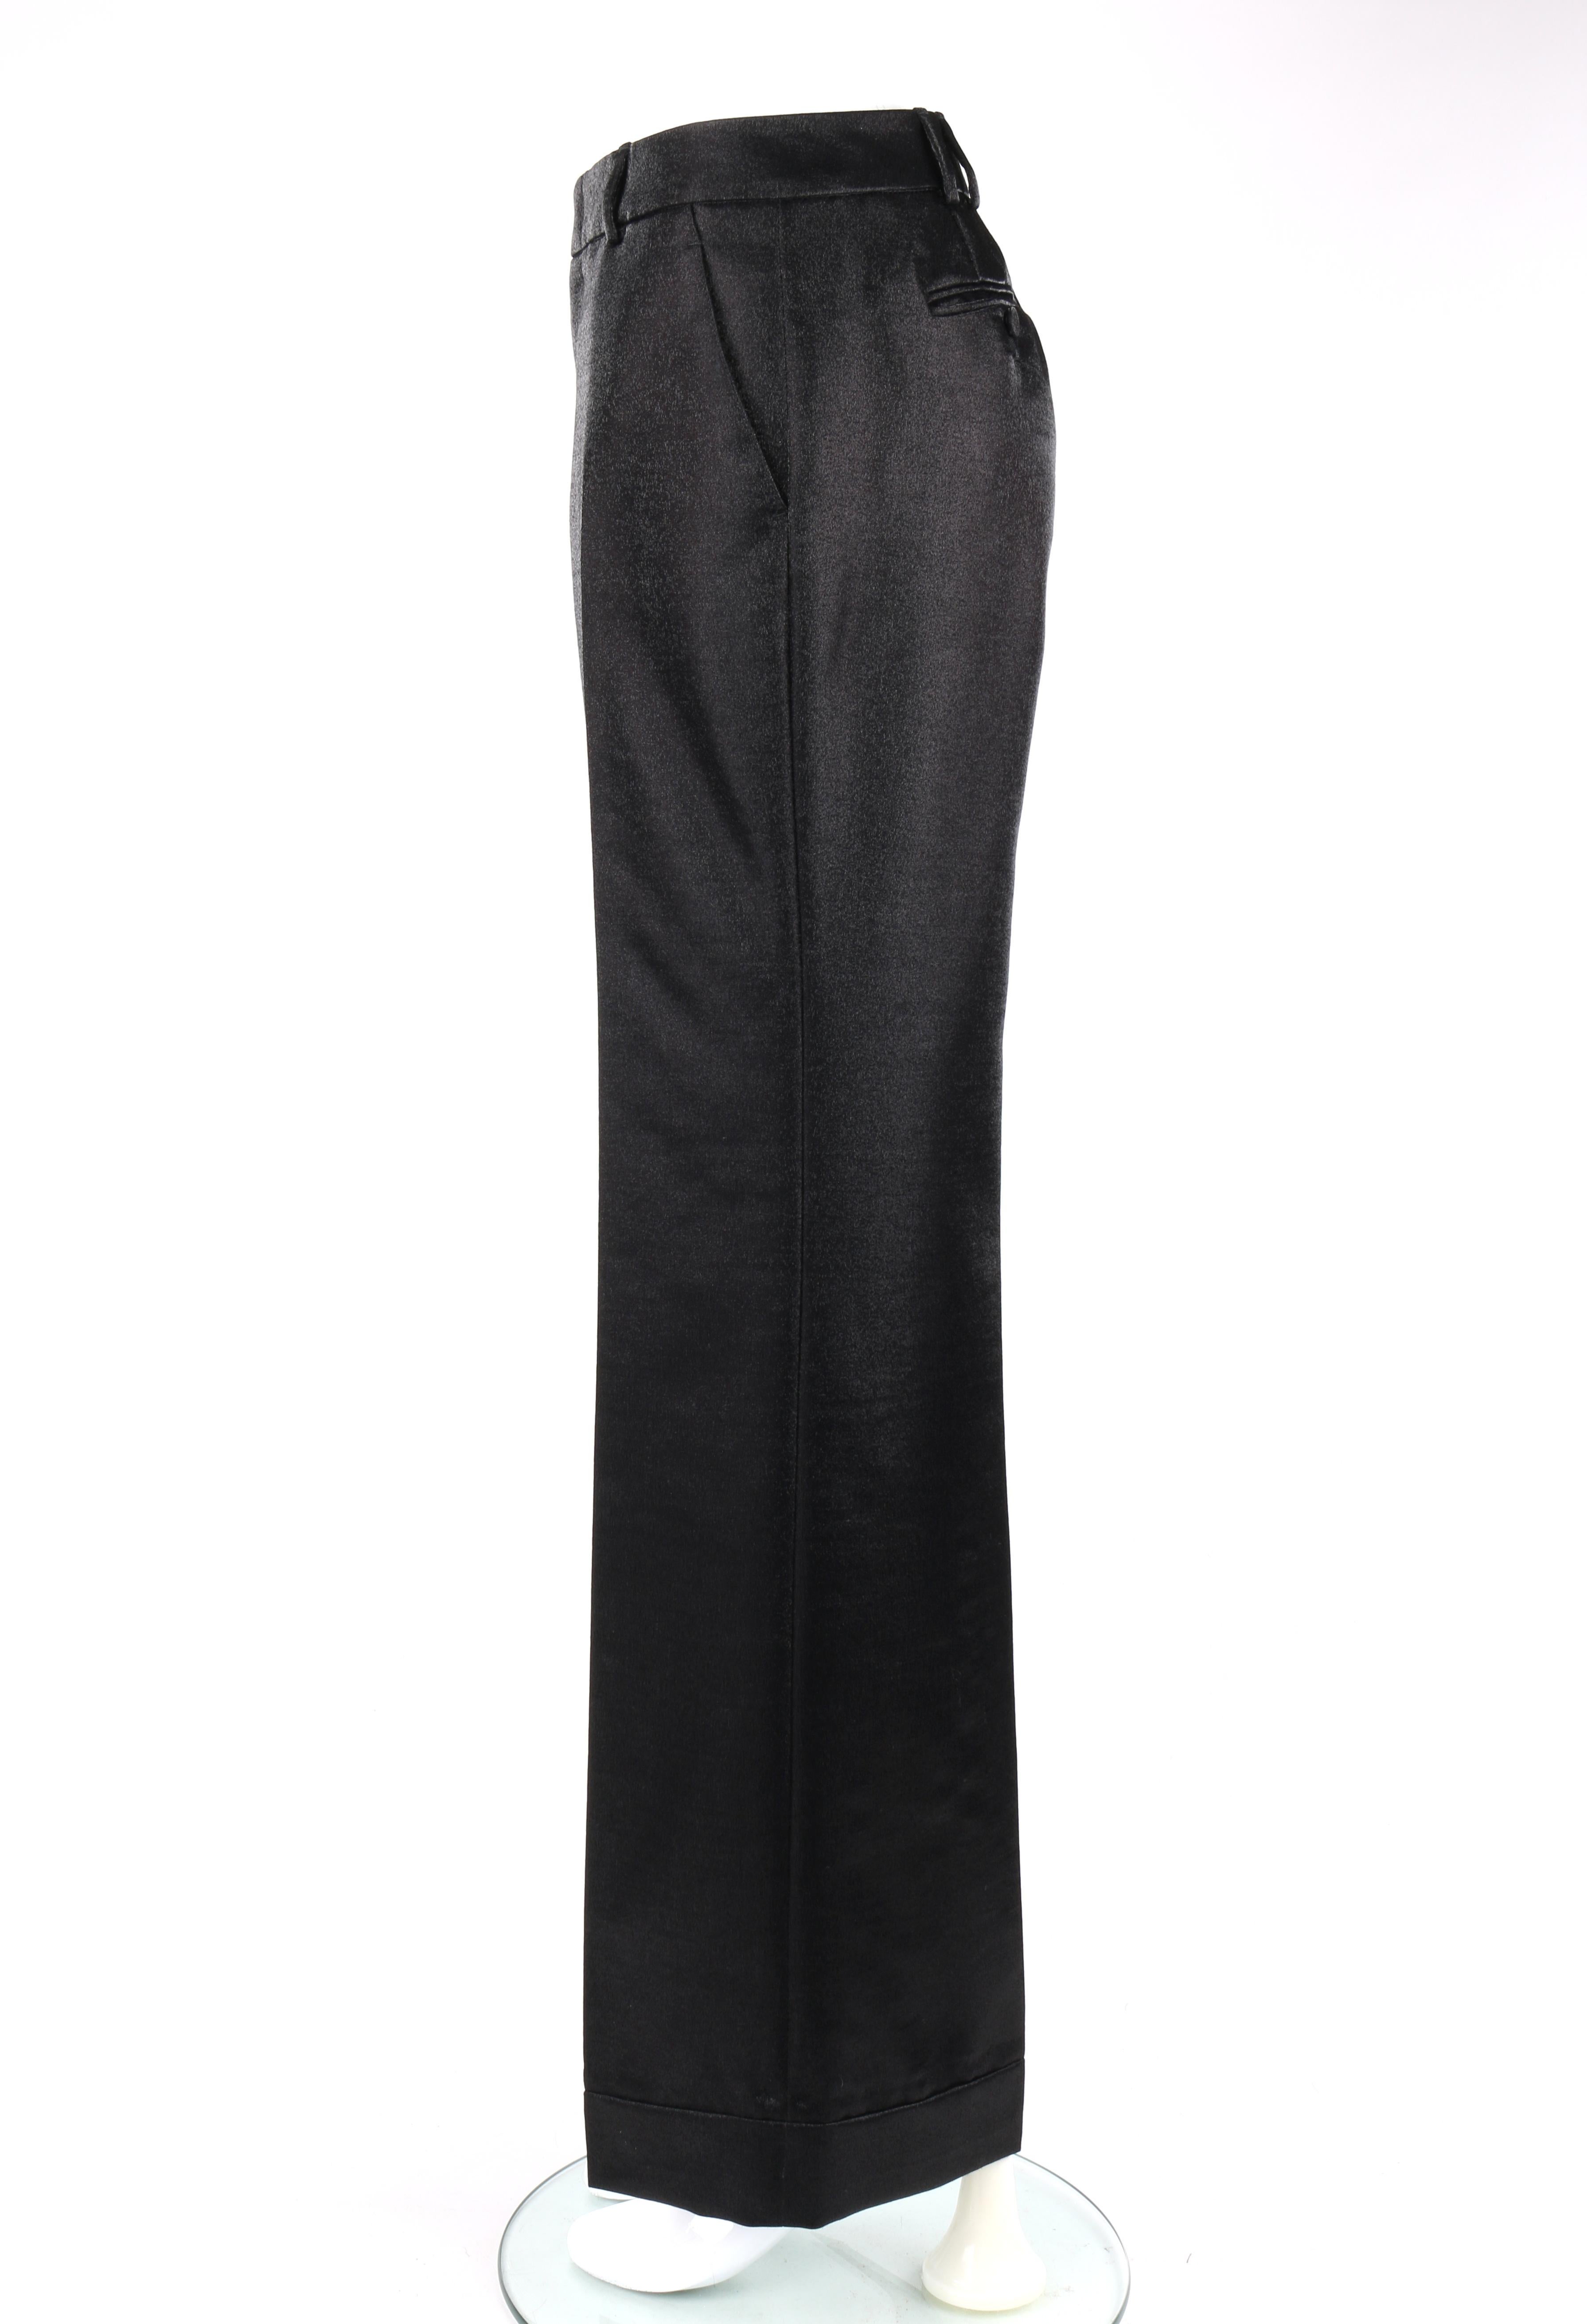 GUCCI A/W 2006 2pc Black Metallic Satin Blazer & Wide Leg Trouser Pant Suit Set 2